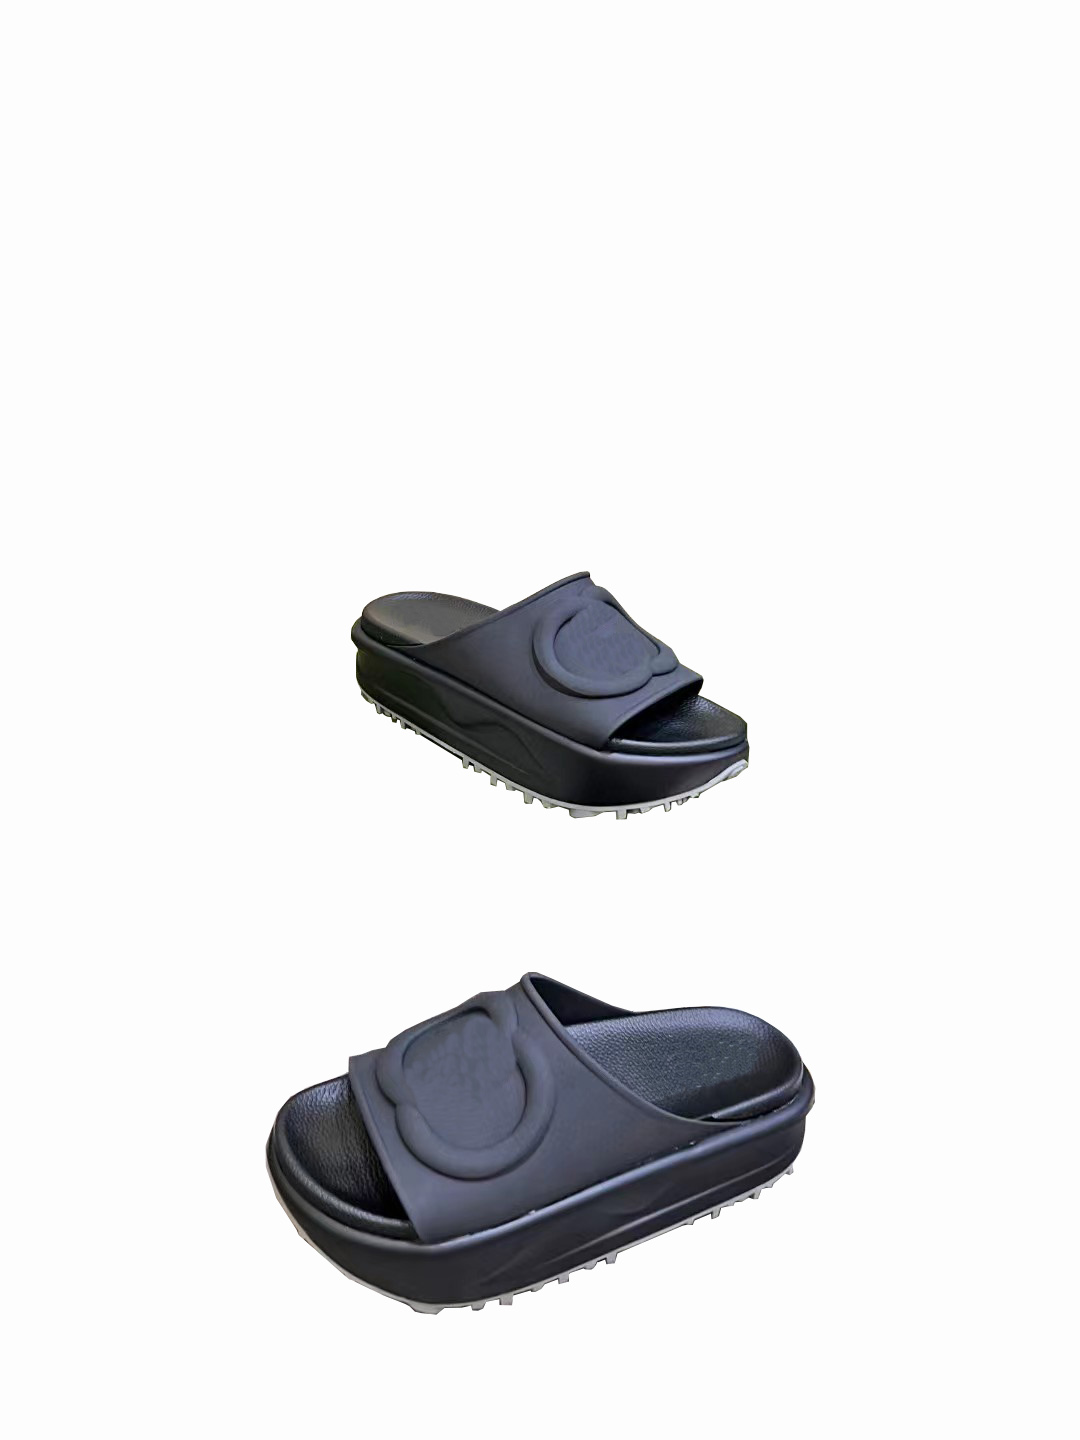 Chaussures de designer originales de haute qualité Chaussures pour femmes Sandales Pantoufles d'été Chaussures à semelles épaisses Sandales en cuir véritable Glisser des pantoufles de plage avec boîte bateau libre